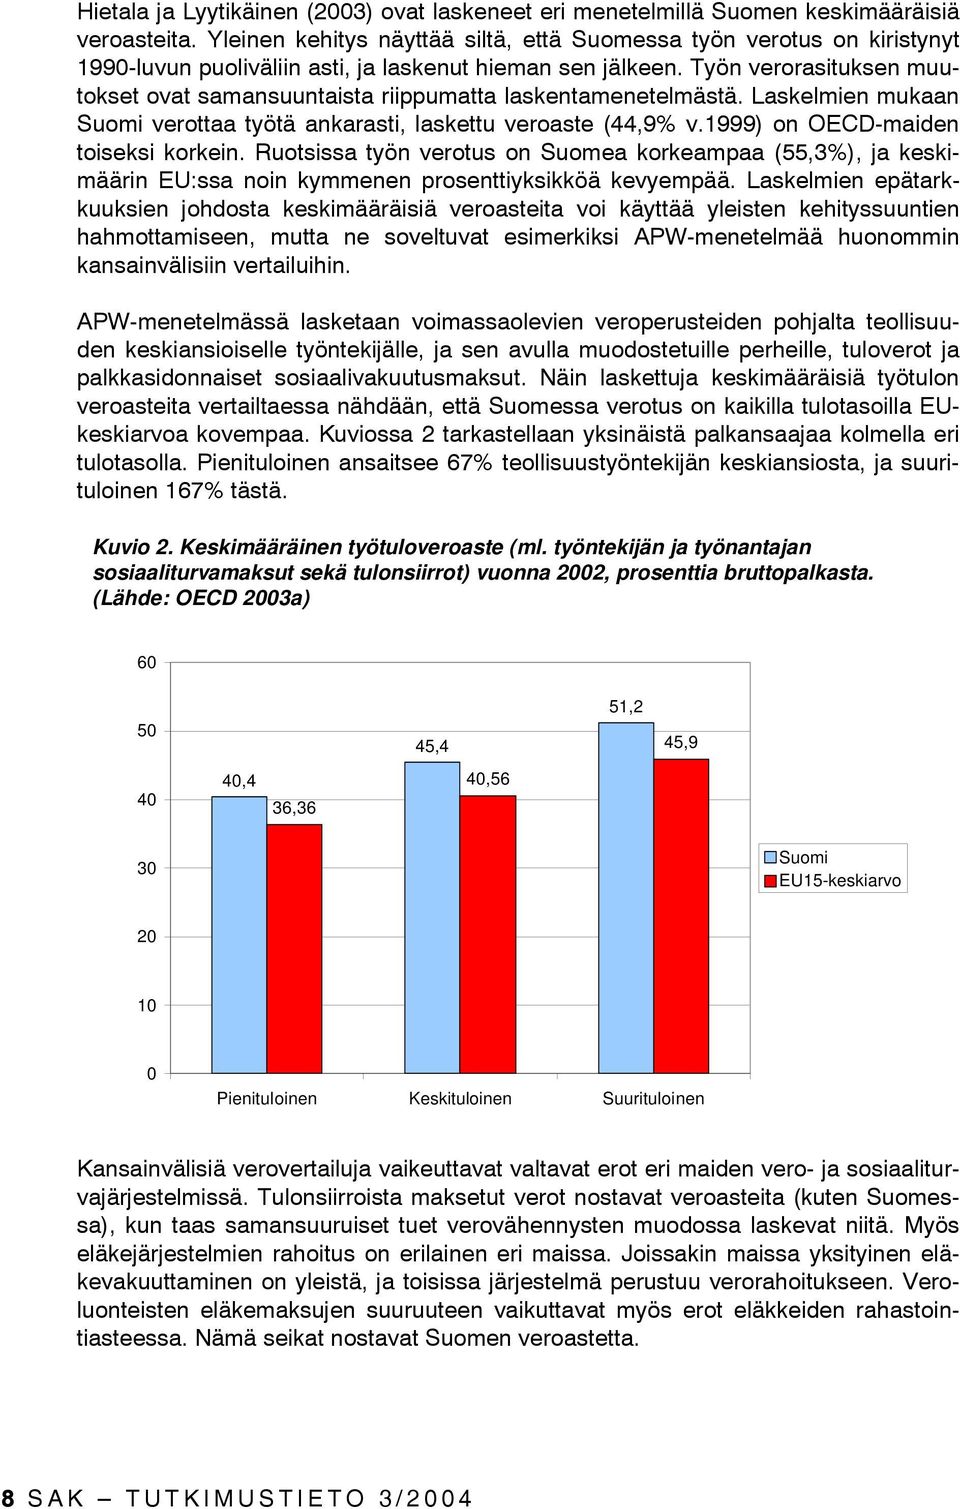 Työn verorasituksen muutokset ovat samansuuntaista riippumatta laskentamenetelmästä. Laskelmien mukaan Suomi verottaa työtä ankarasti, laskettu veroaste (44,9% v.1999) on OECD-maiden toiseksi korkein.